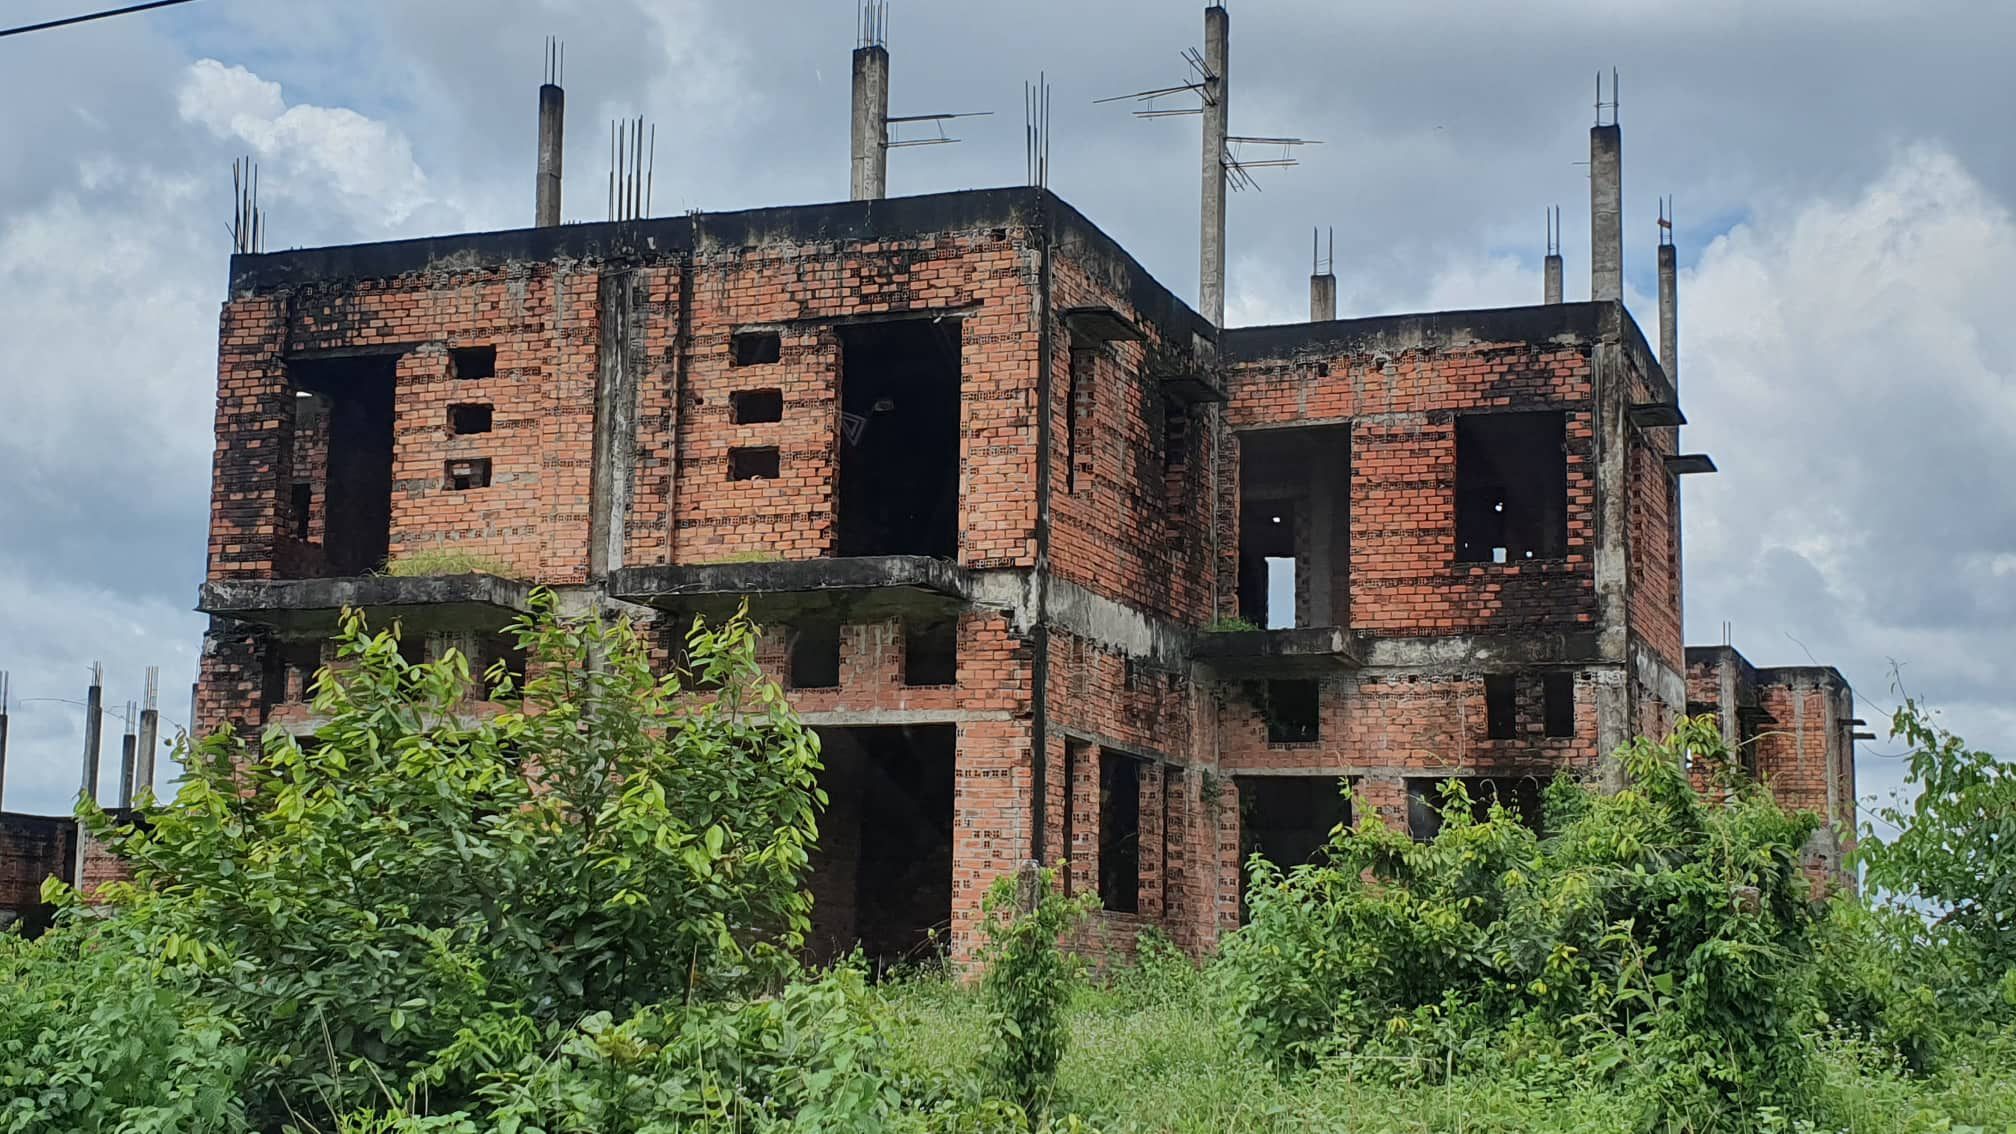 La liệt chung cư, biệt thự bỏ hoang ở Nhơn Trạch